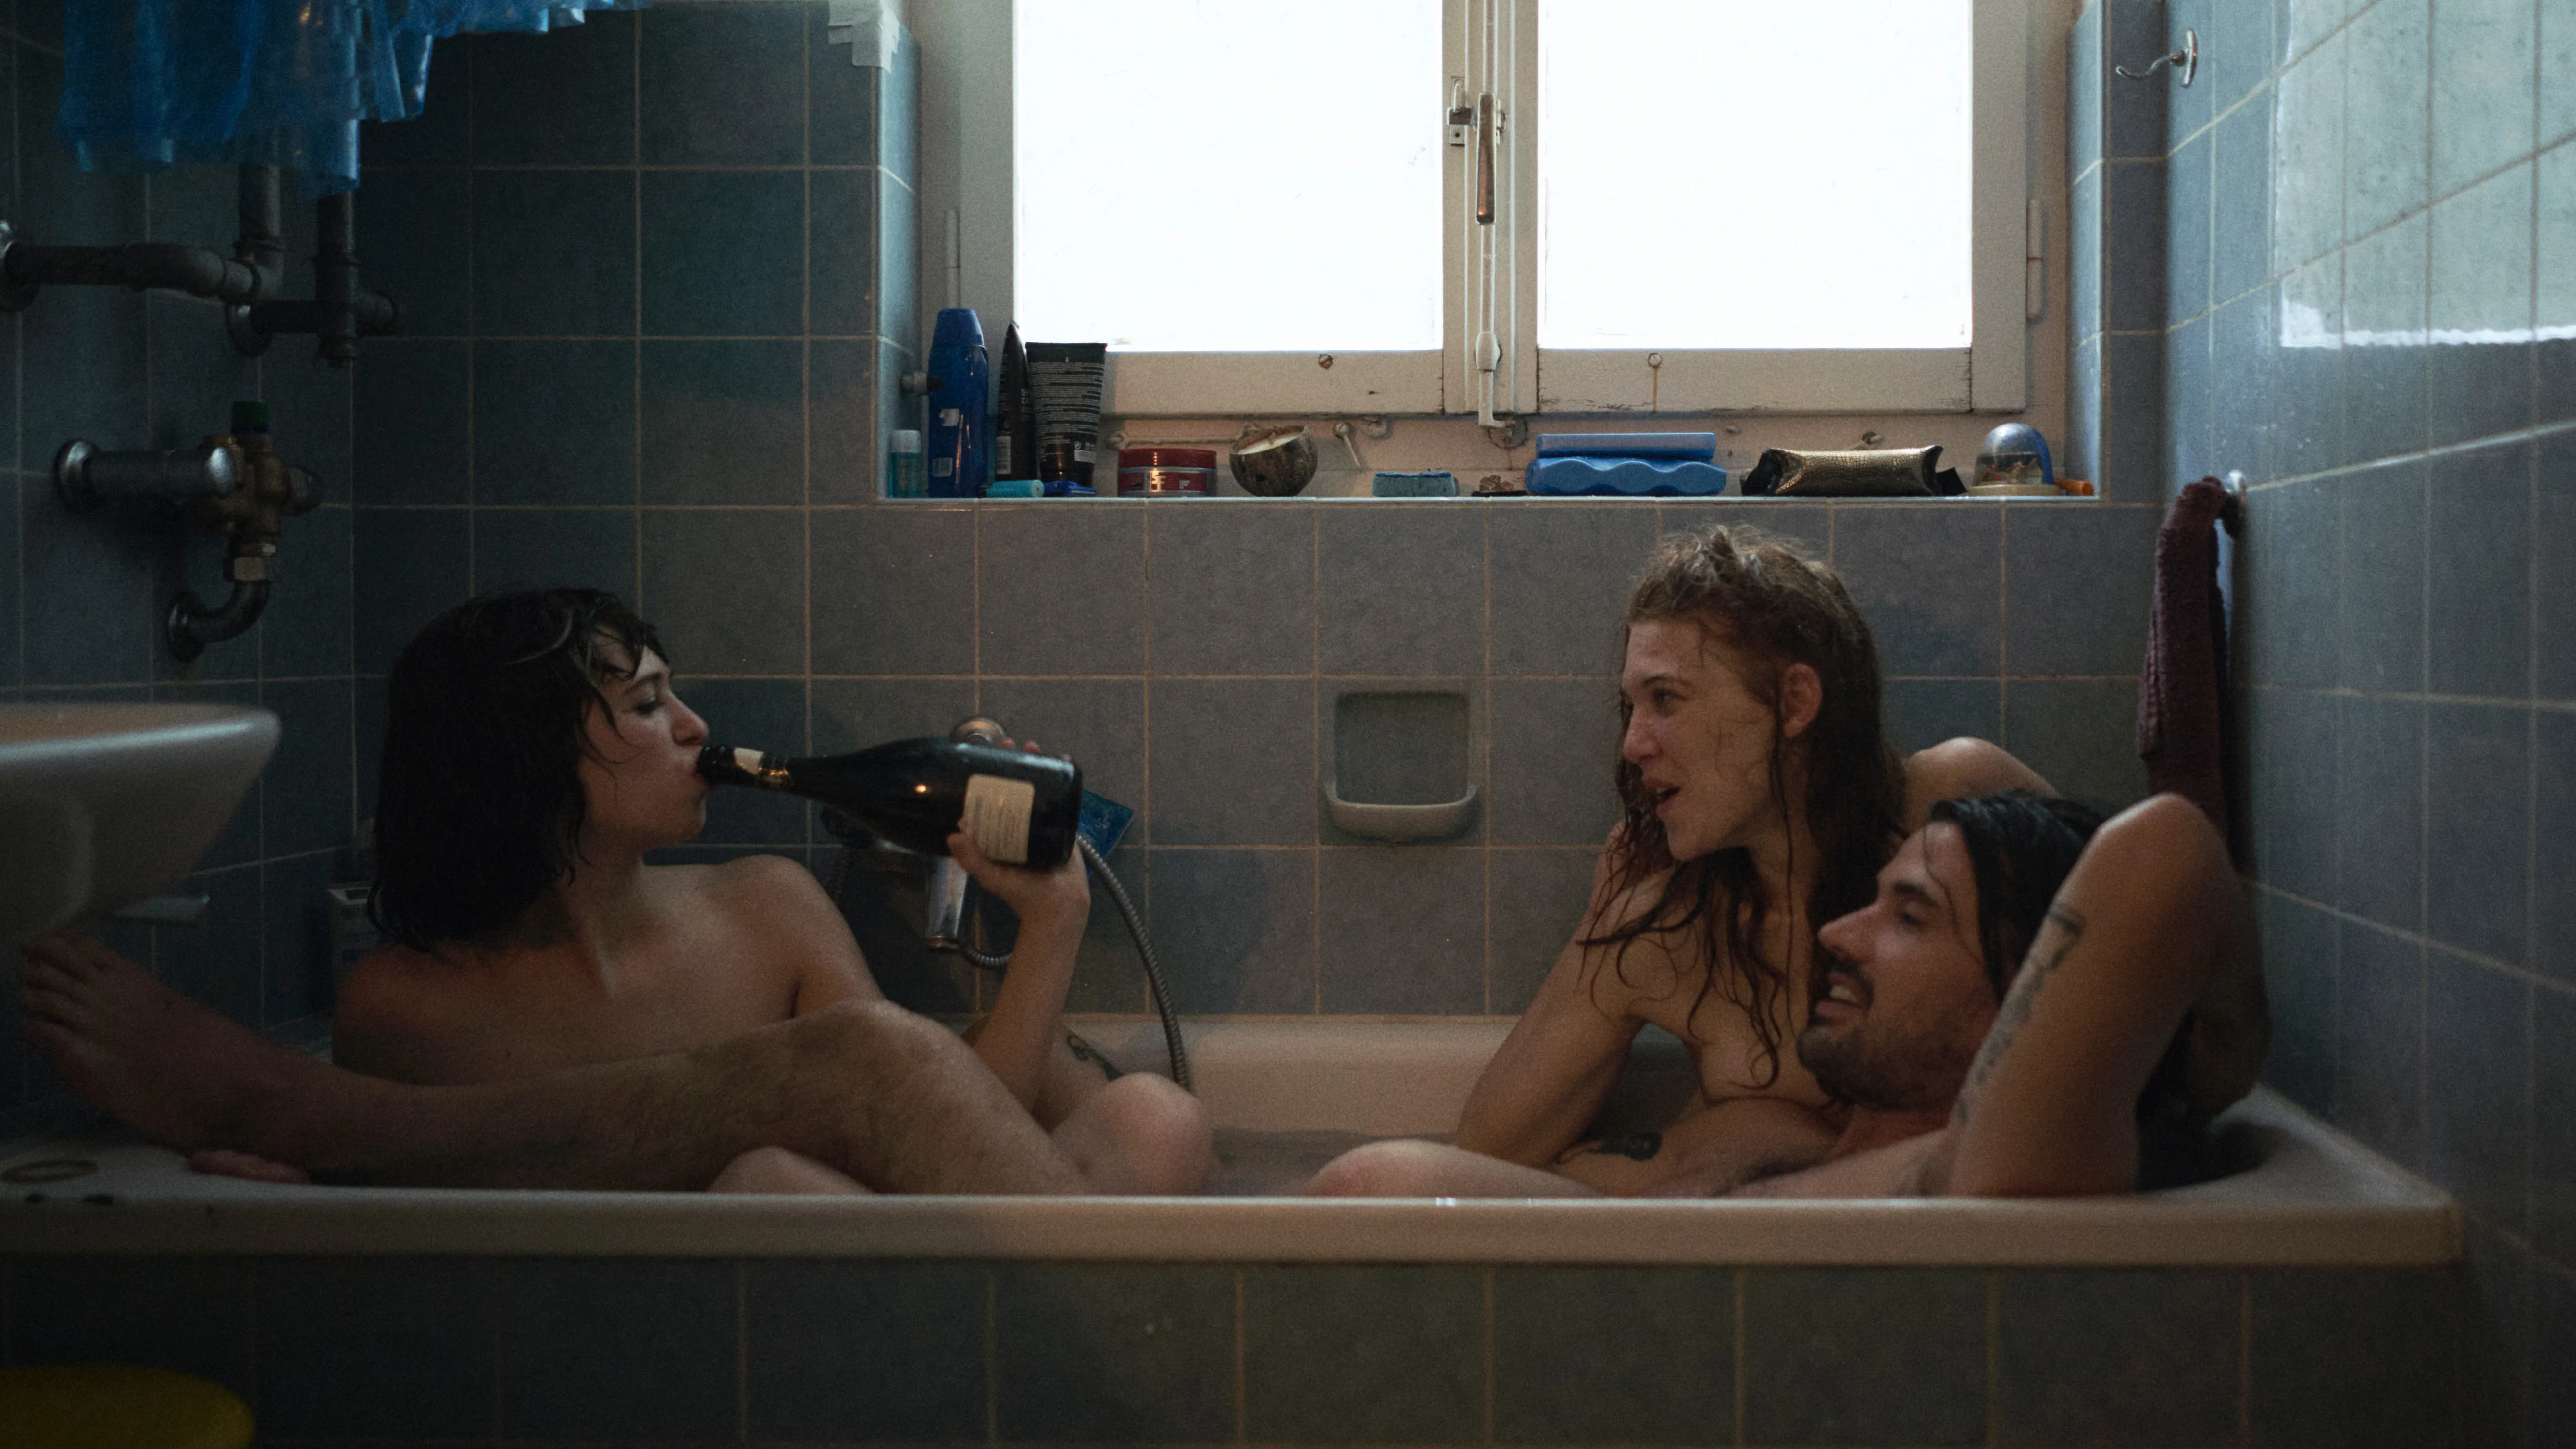 Bild aus dem Film: Zu dritt nackt in der Badewanne.